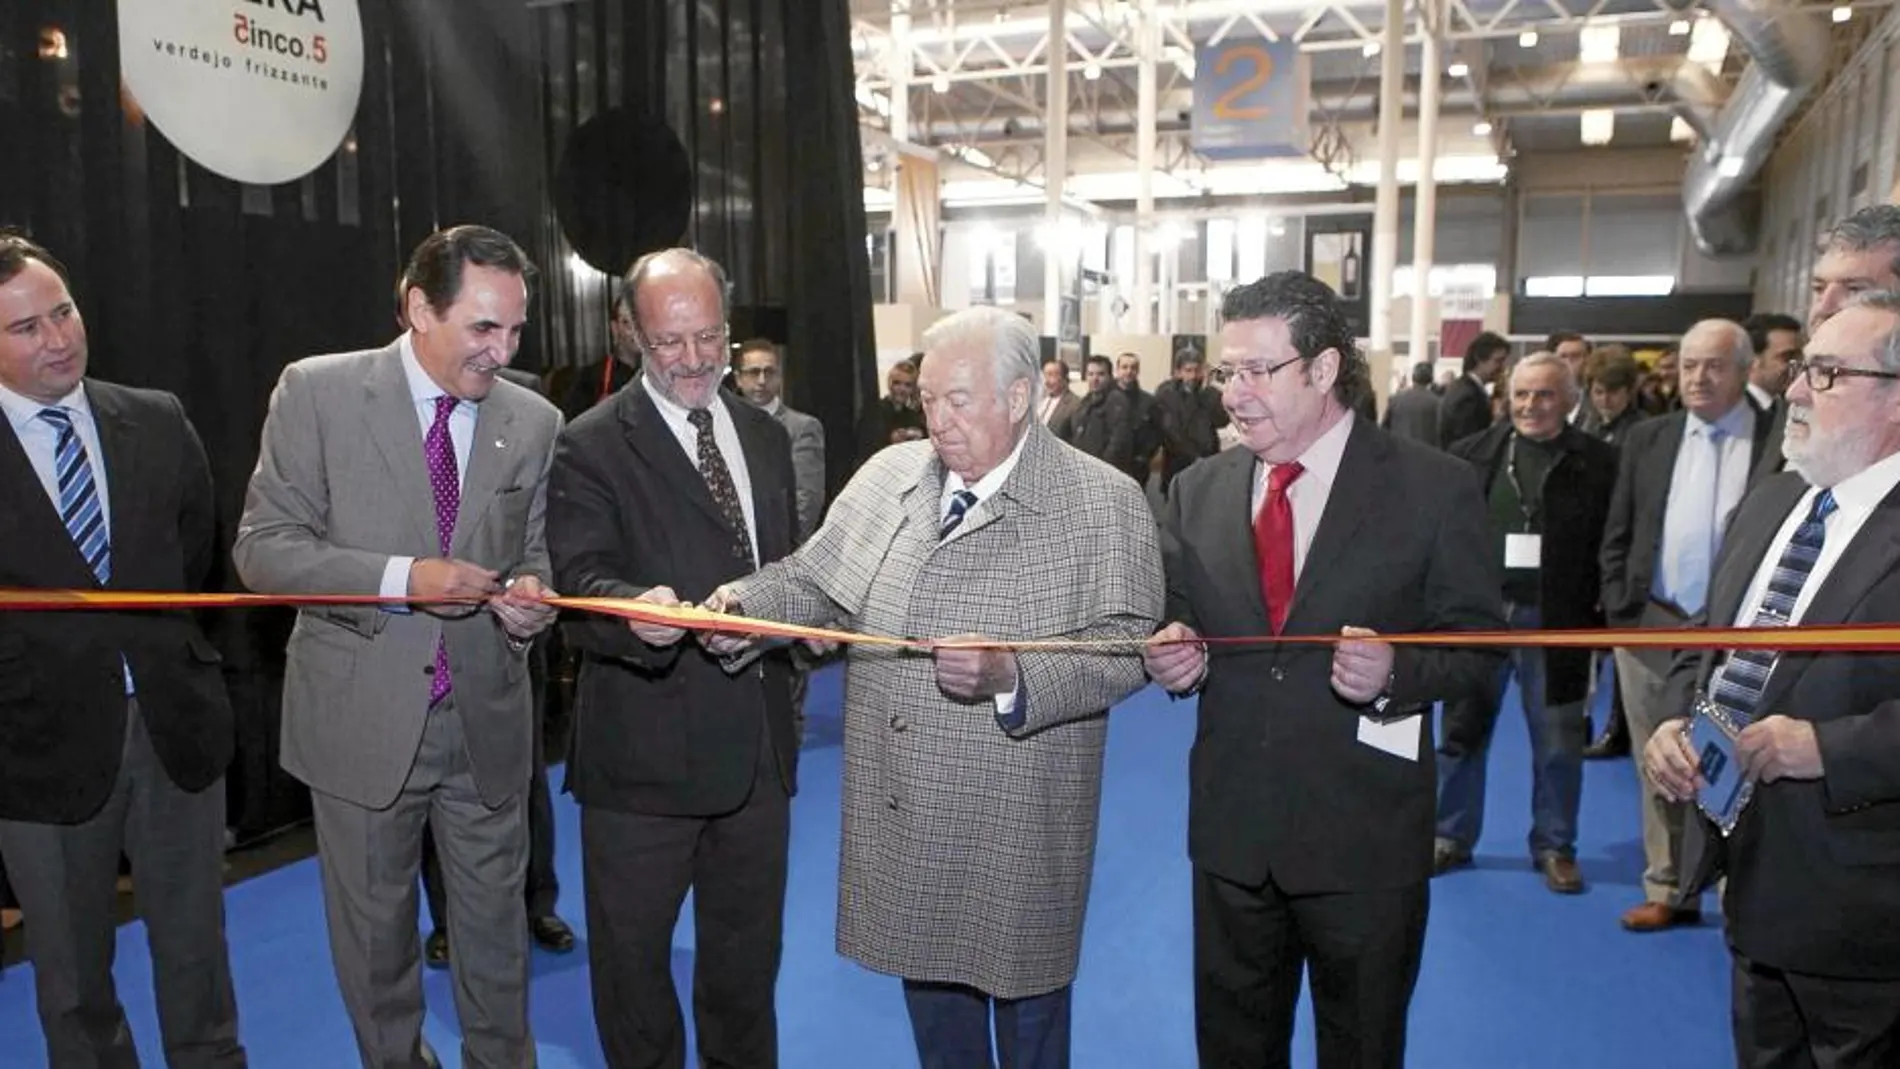 León de la Riva, José Rolando Álvarez, David Álvarez y Máximo Gómez inauguran el Salón de la Alimentación